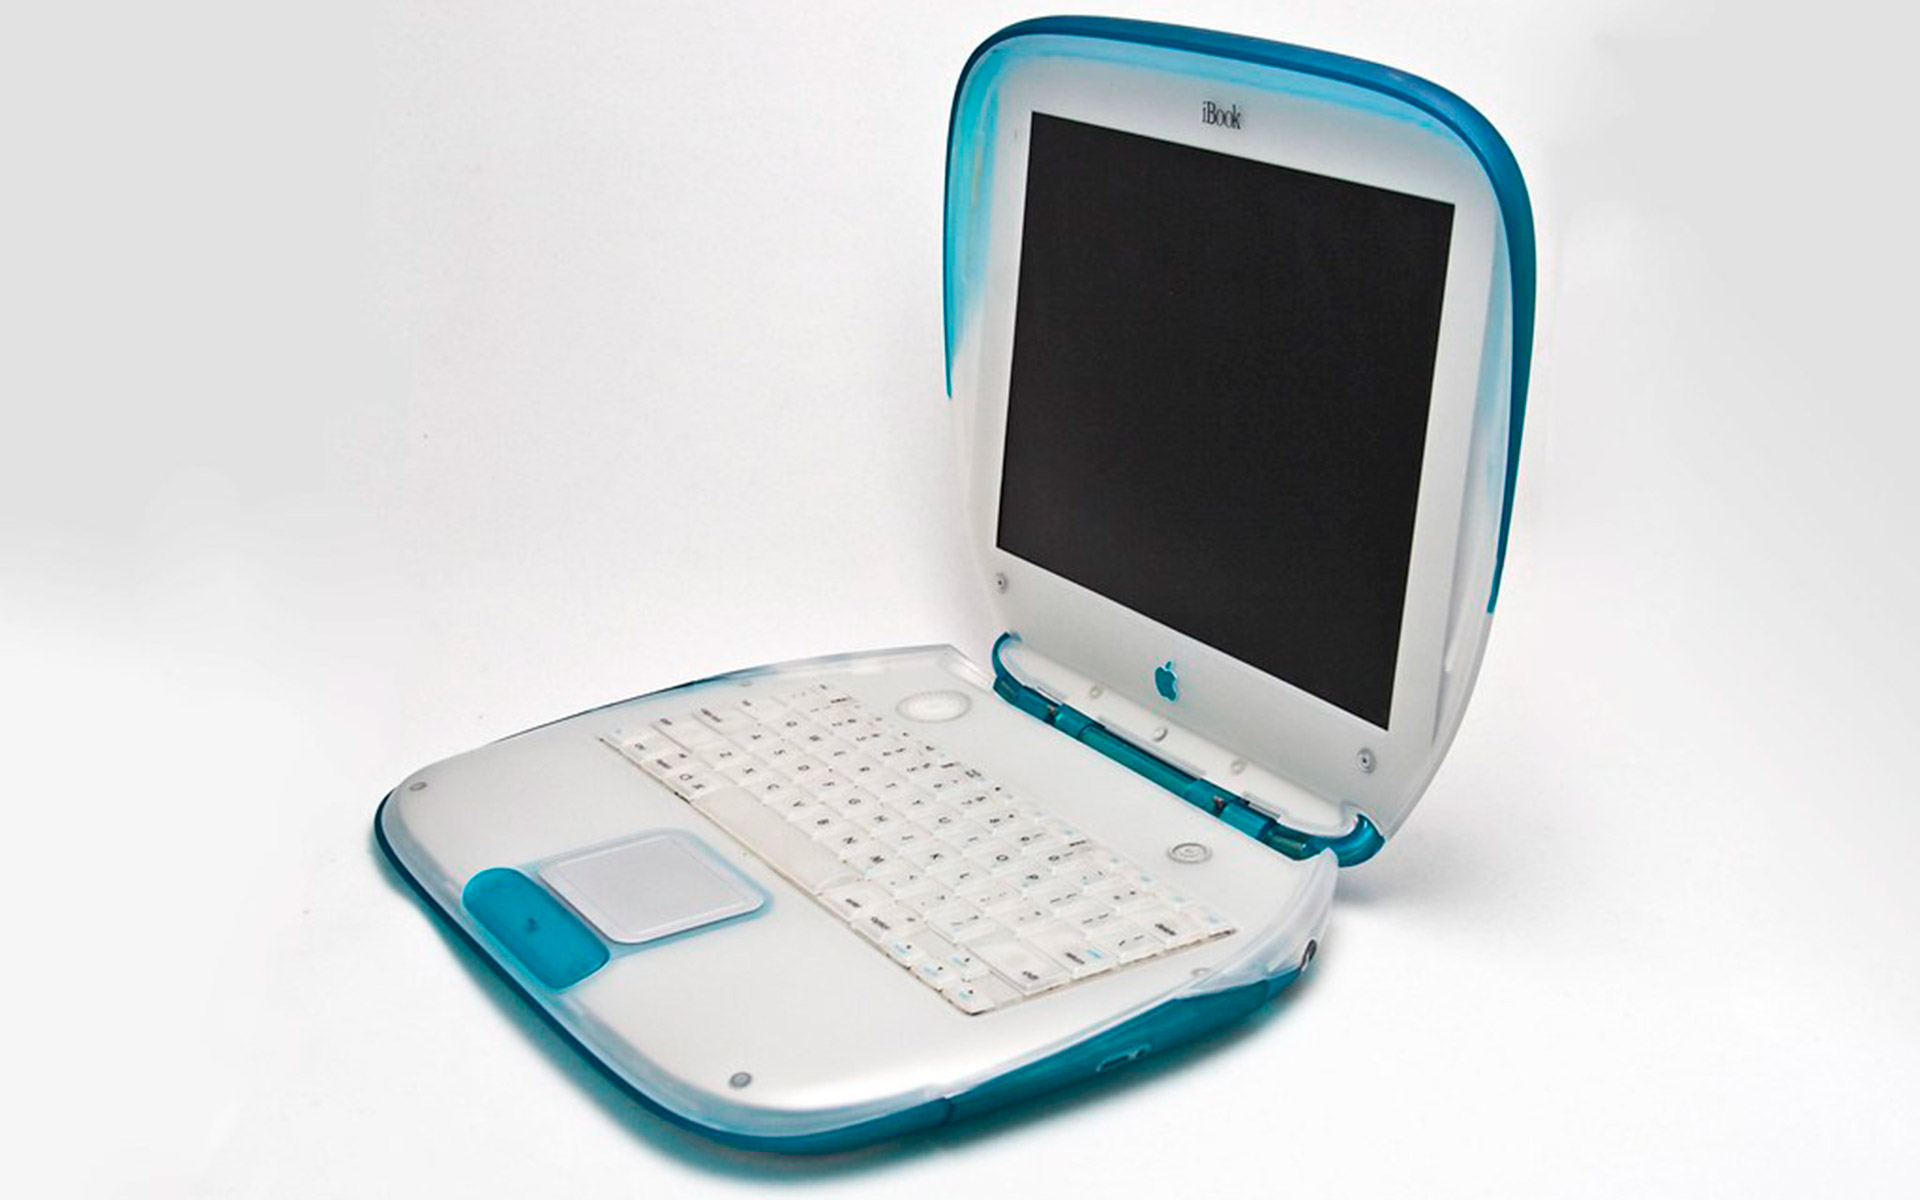 نمای جانبی Apple iBook G3 به رنگ آبی 